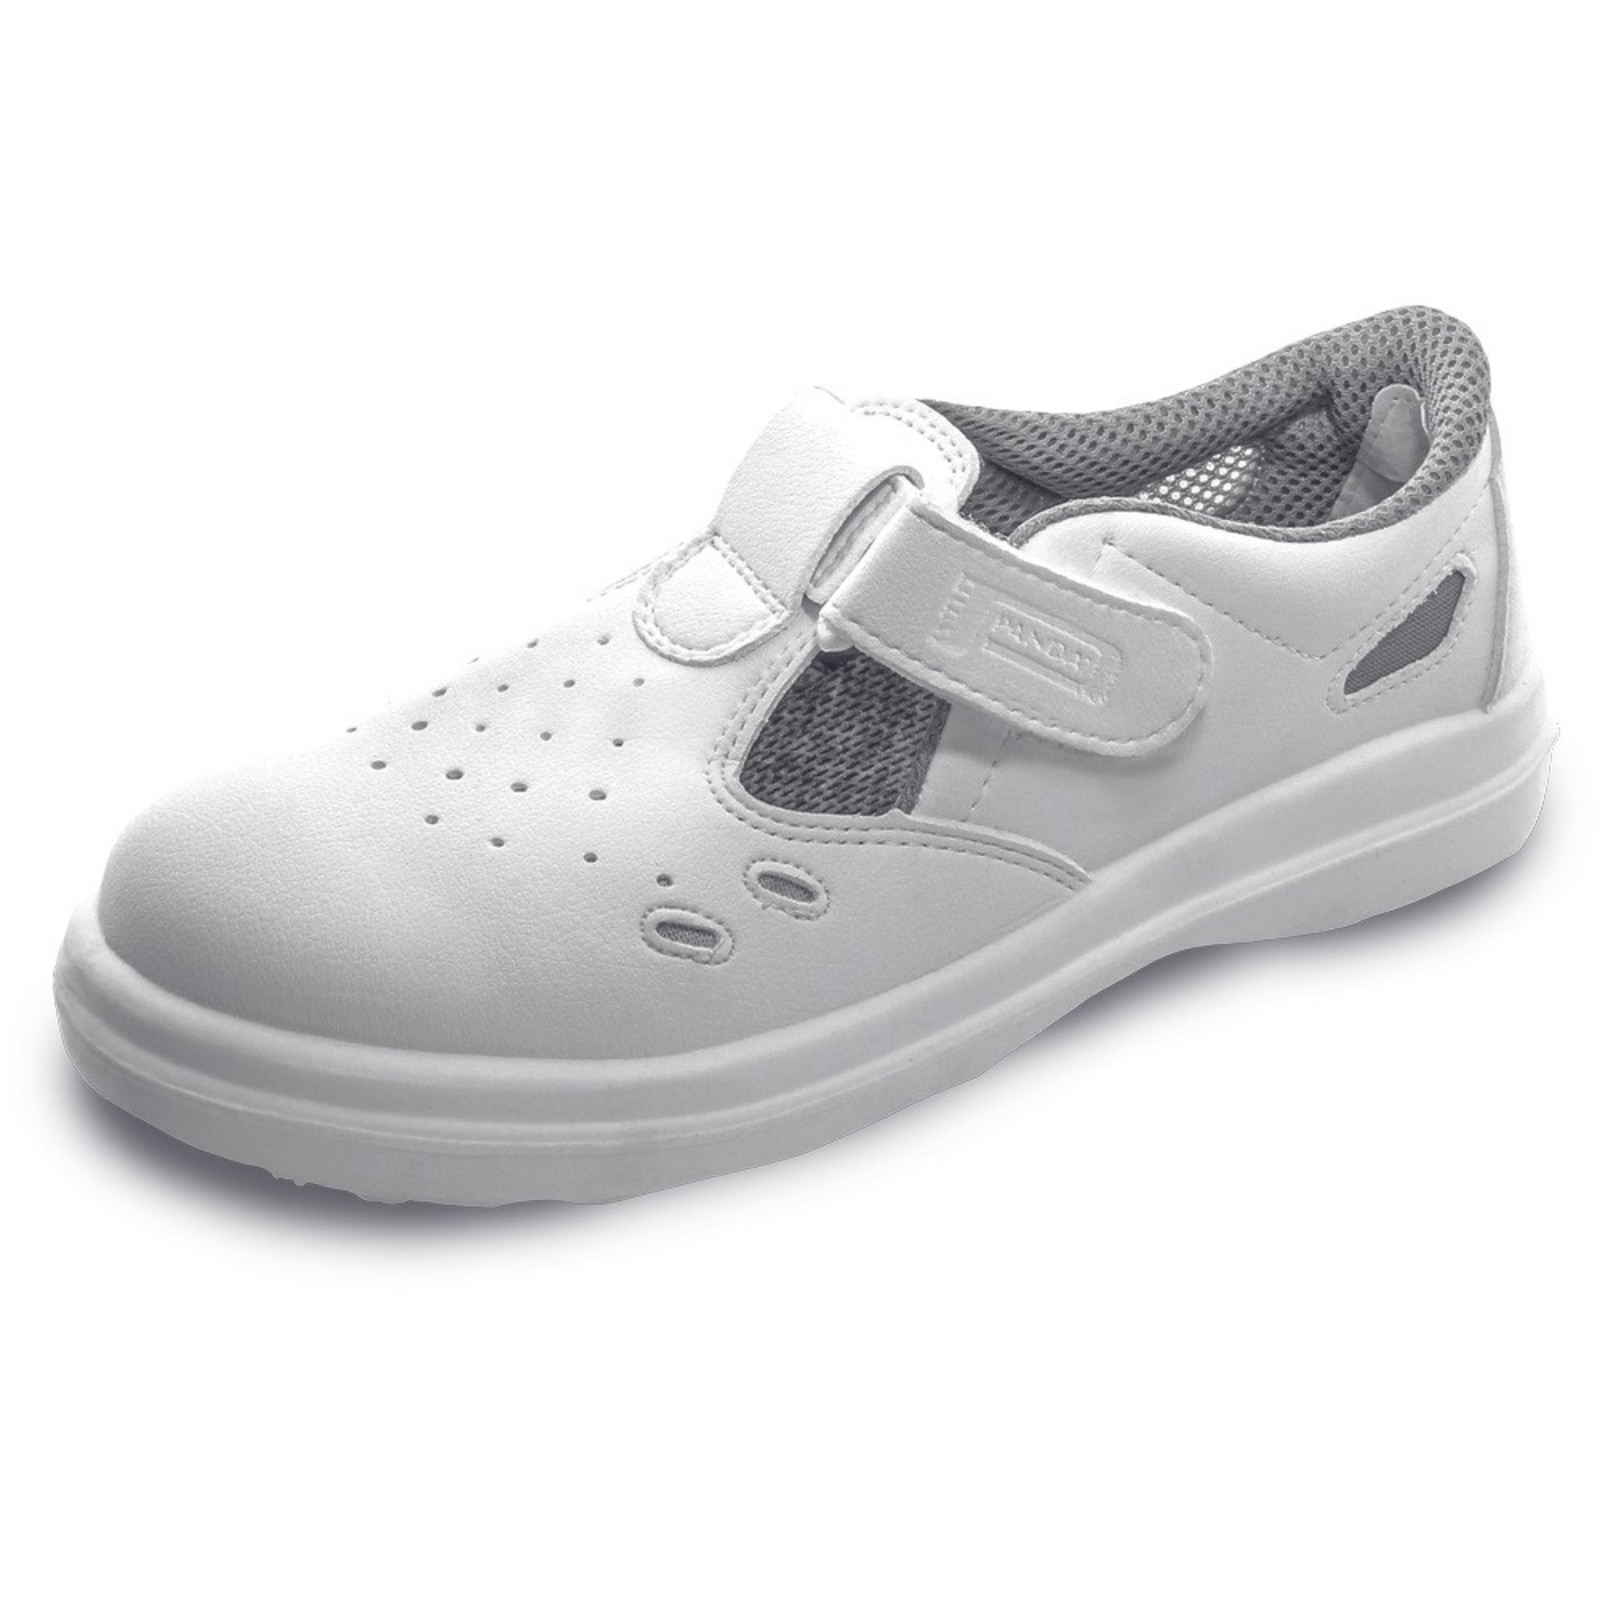 Bezpečnostné sandále Panda Sanitary Lybra S1 SRC - veľkosť: 42, farba: biela